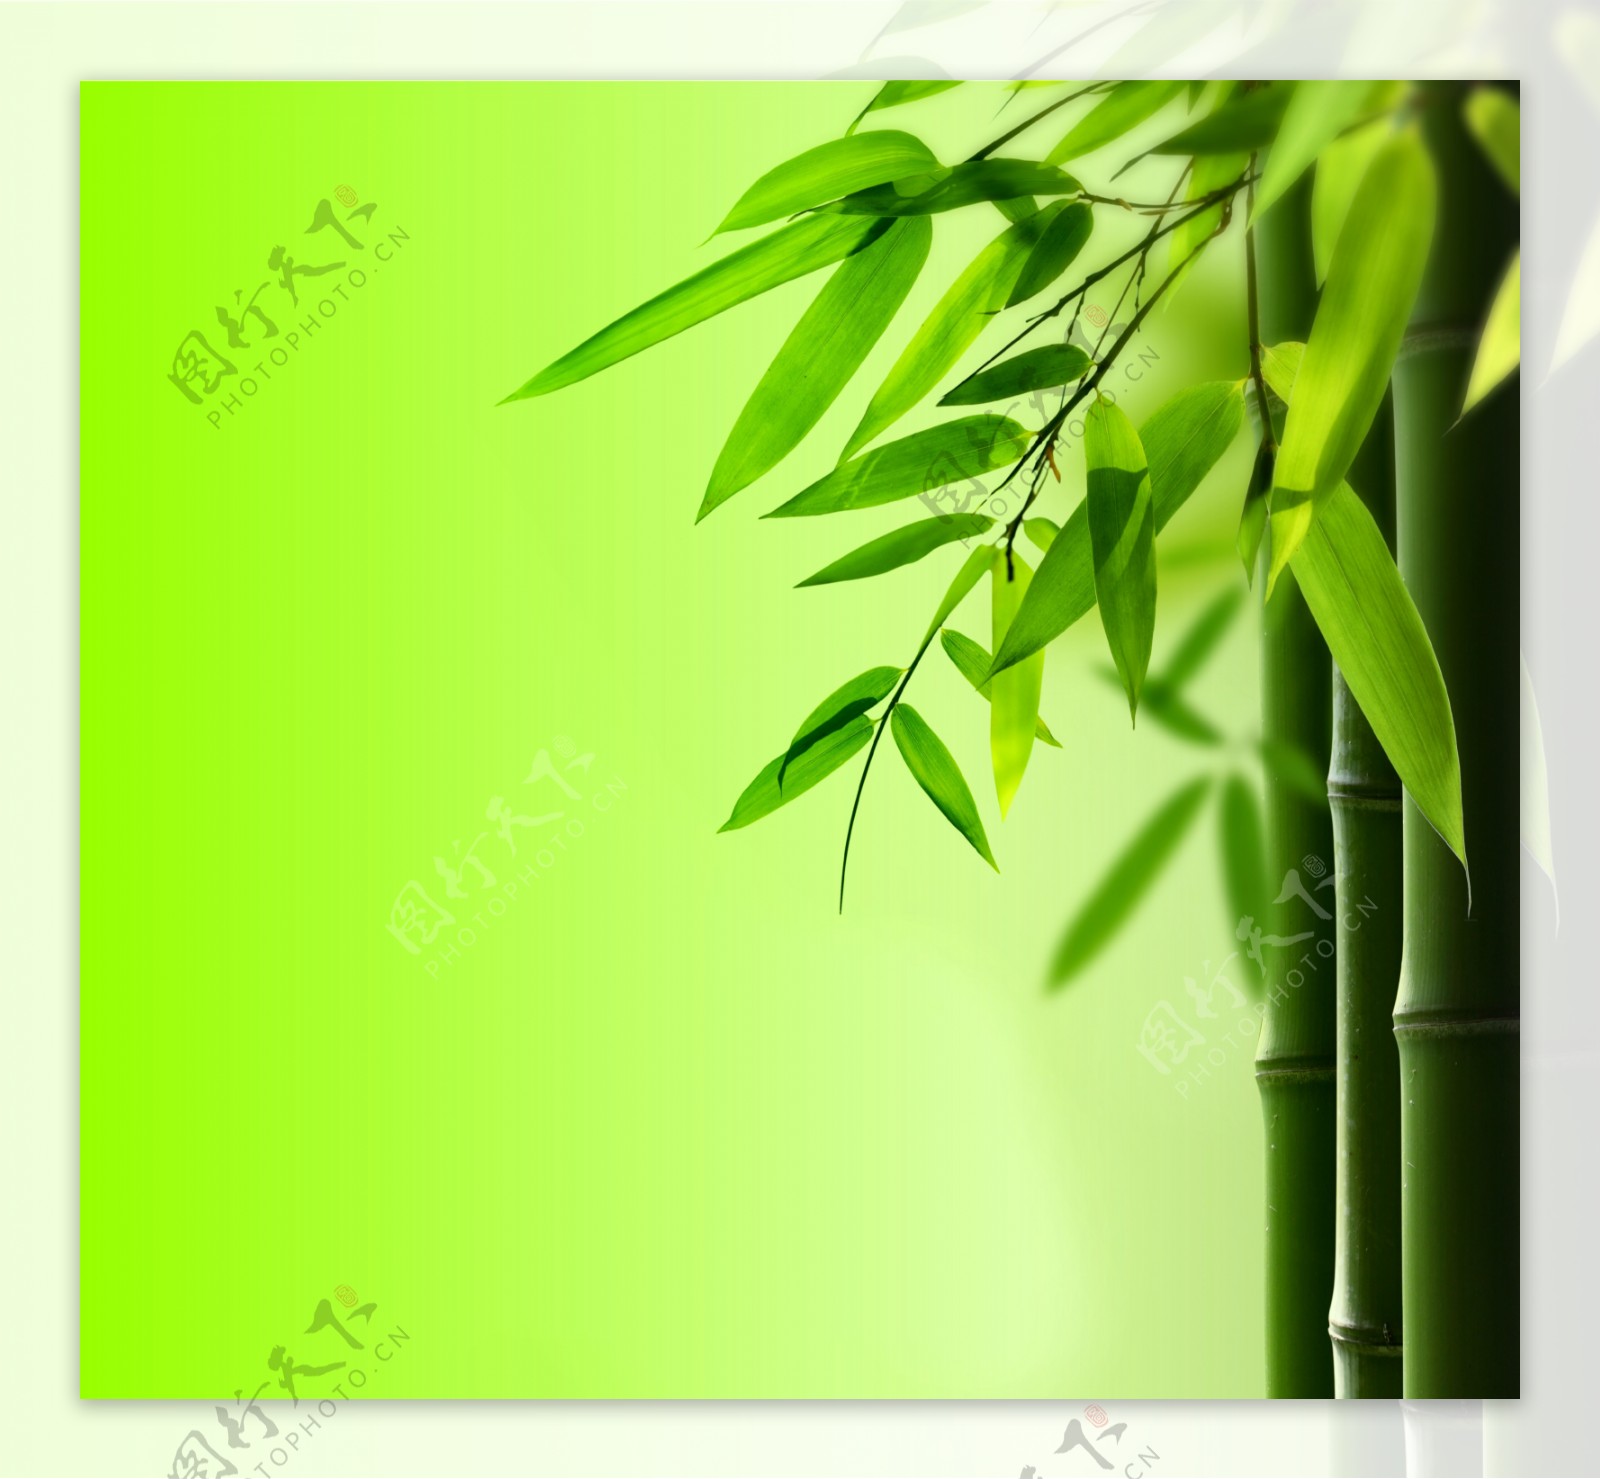 竹子绿竹图片